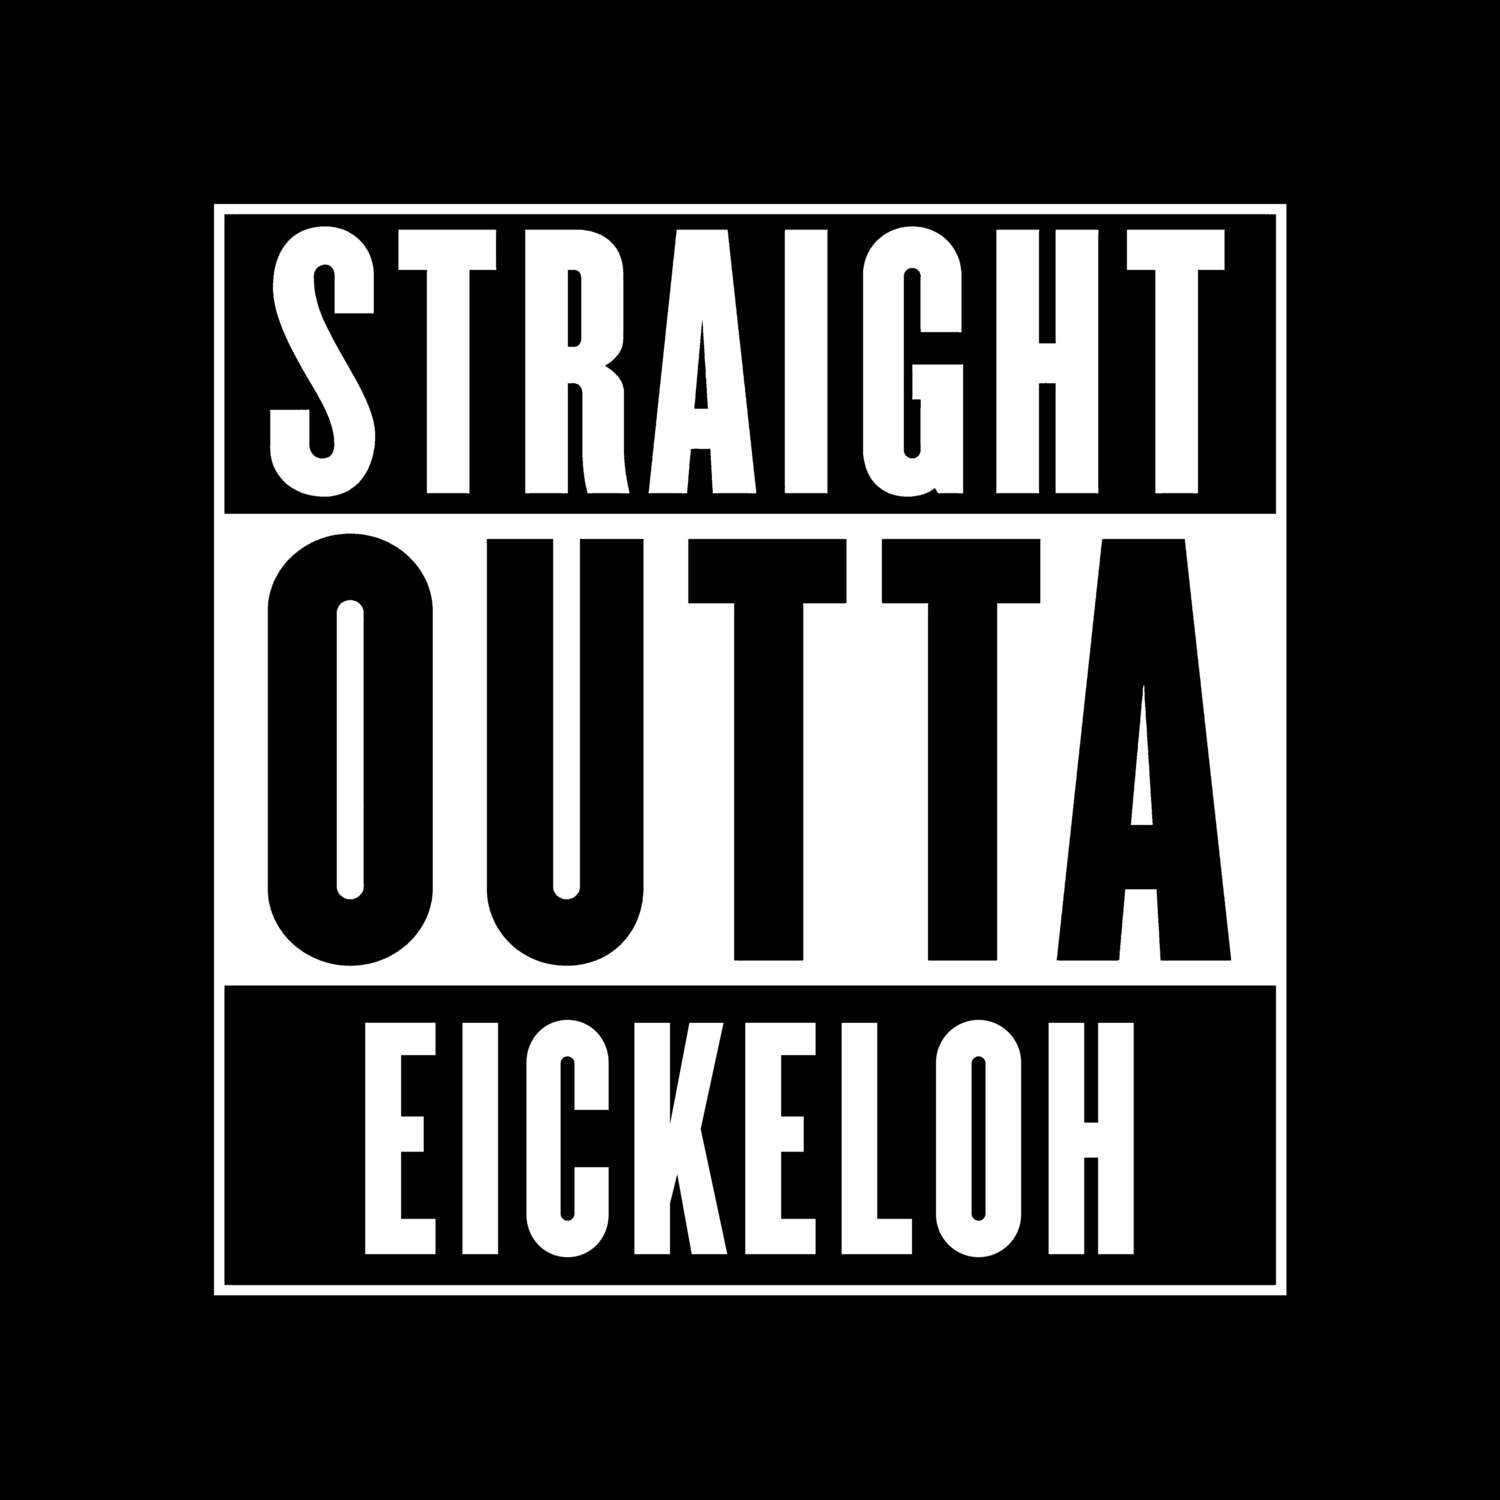 Eickeloh T-Shirt »Straight Outta«